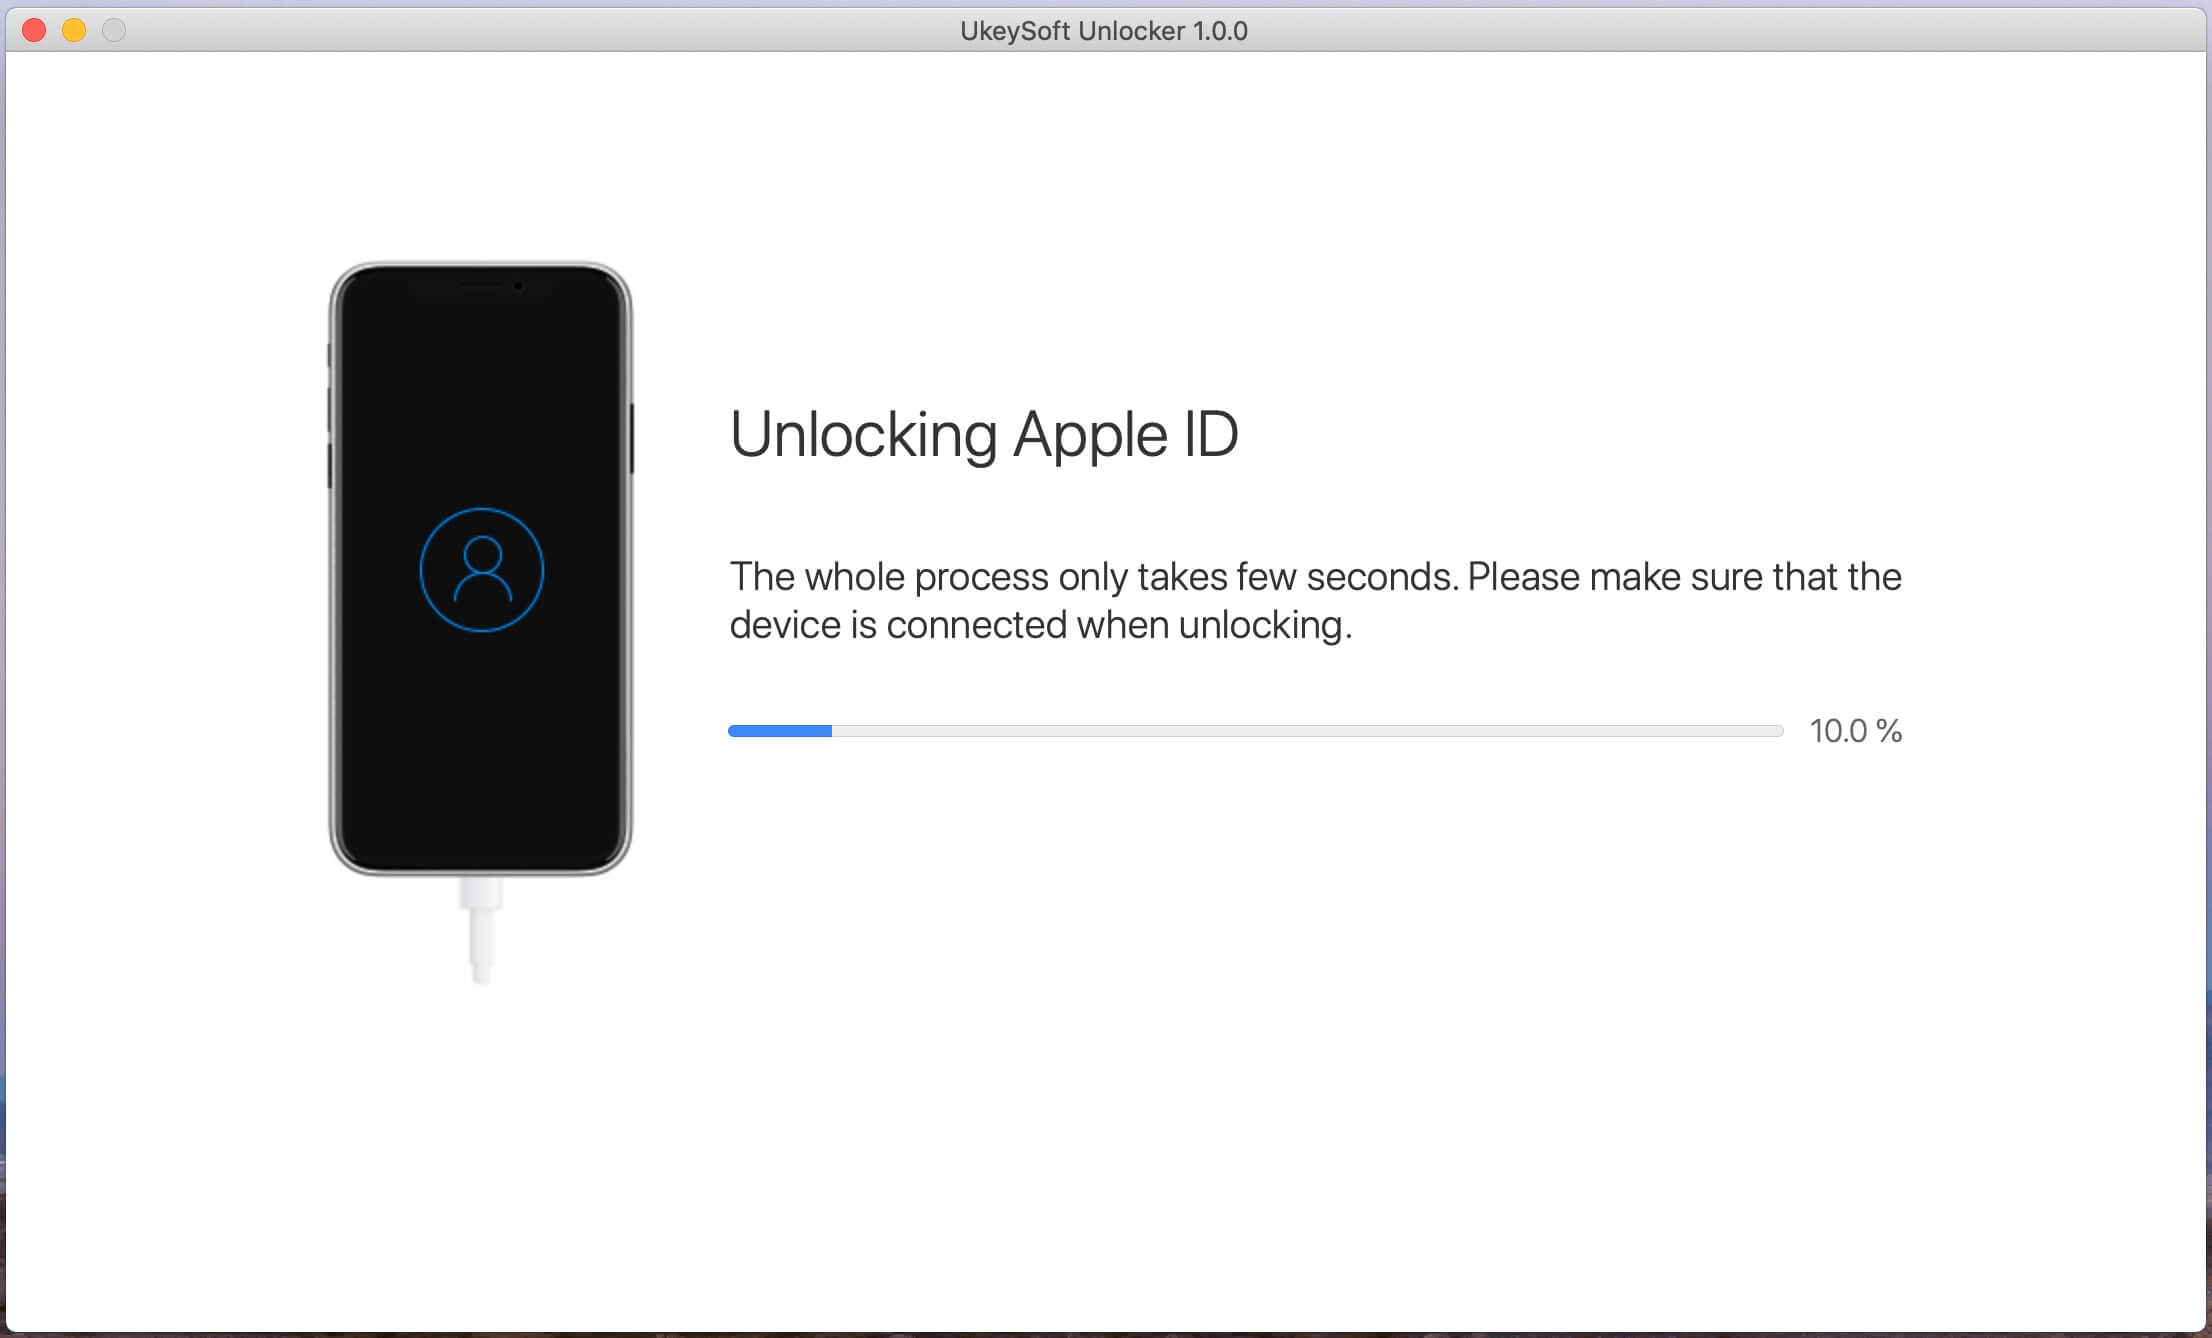 start to unlock Apple ID